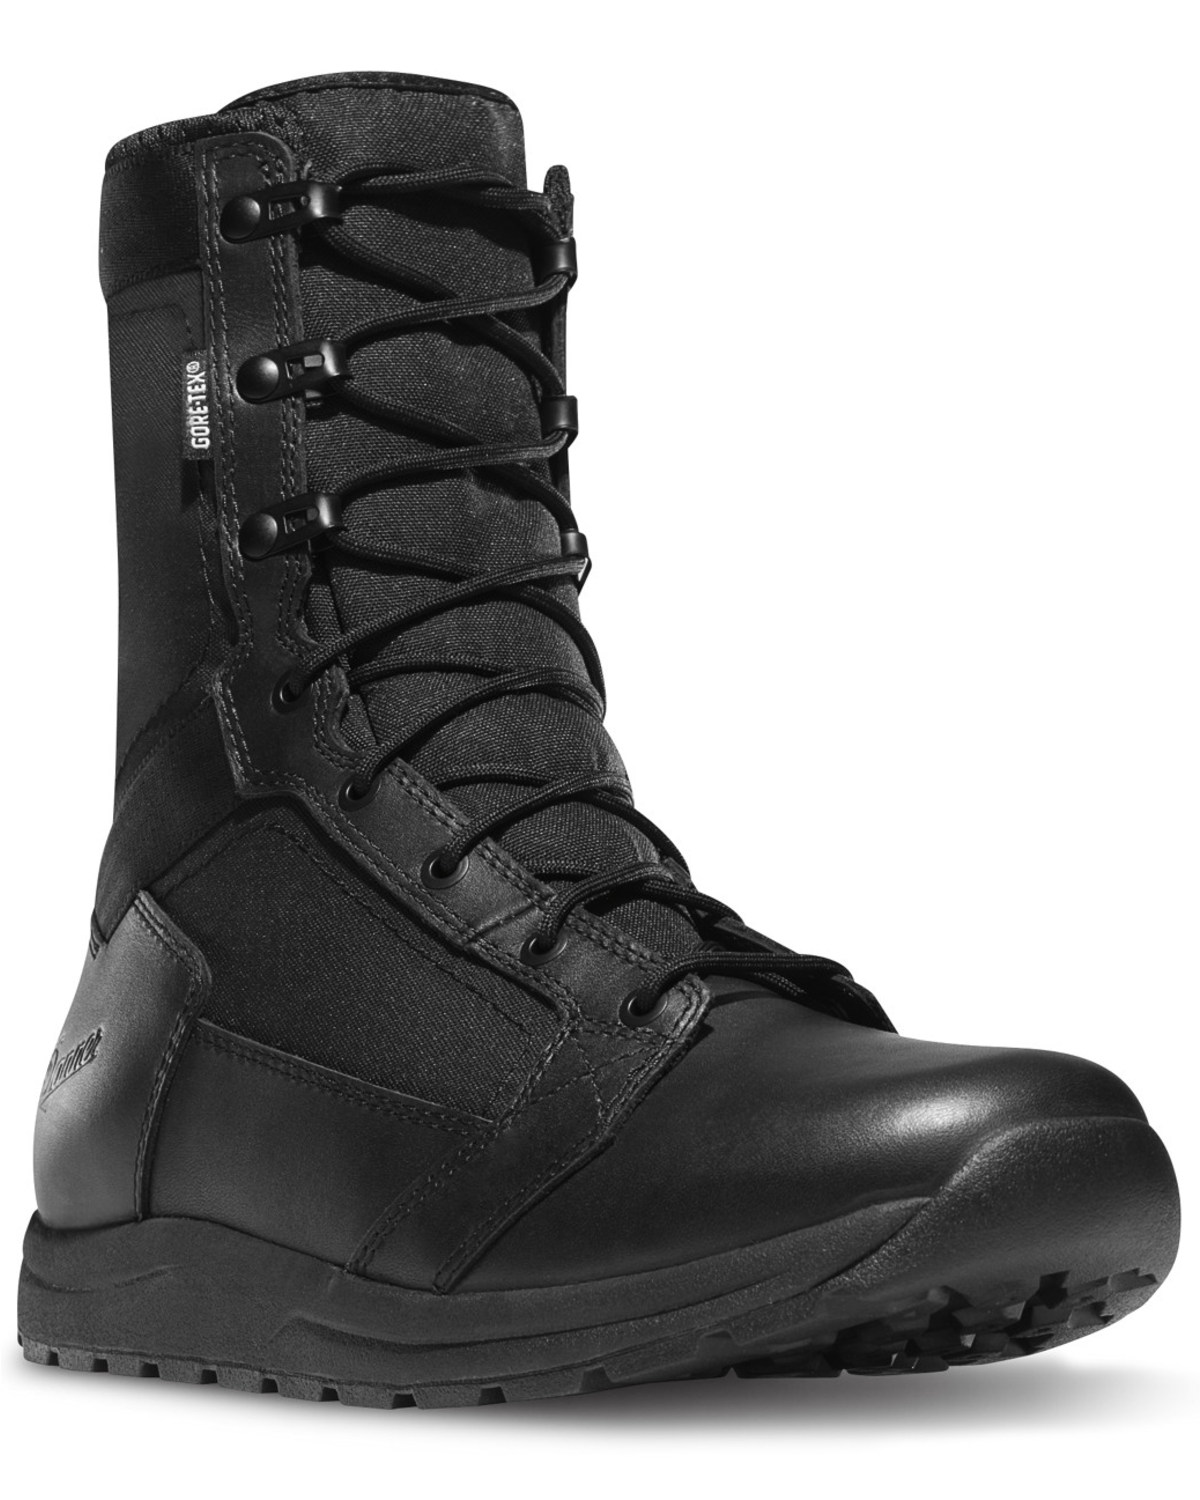 Danner Men's Tachyon Gore-Tex Duty Boots - Soft Toe